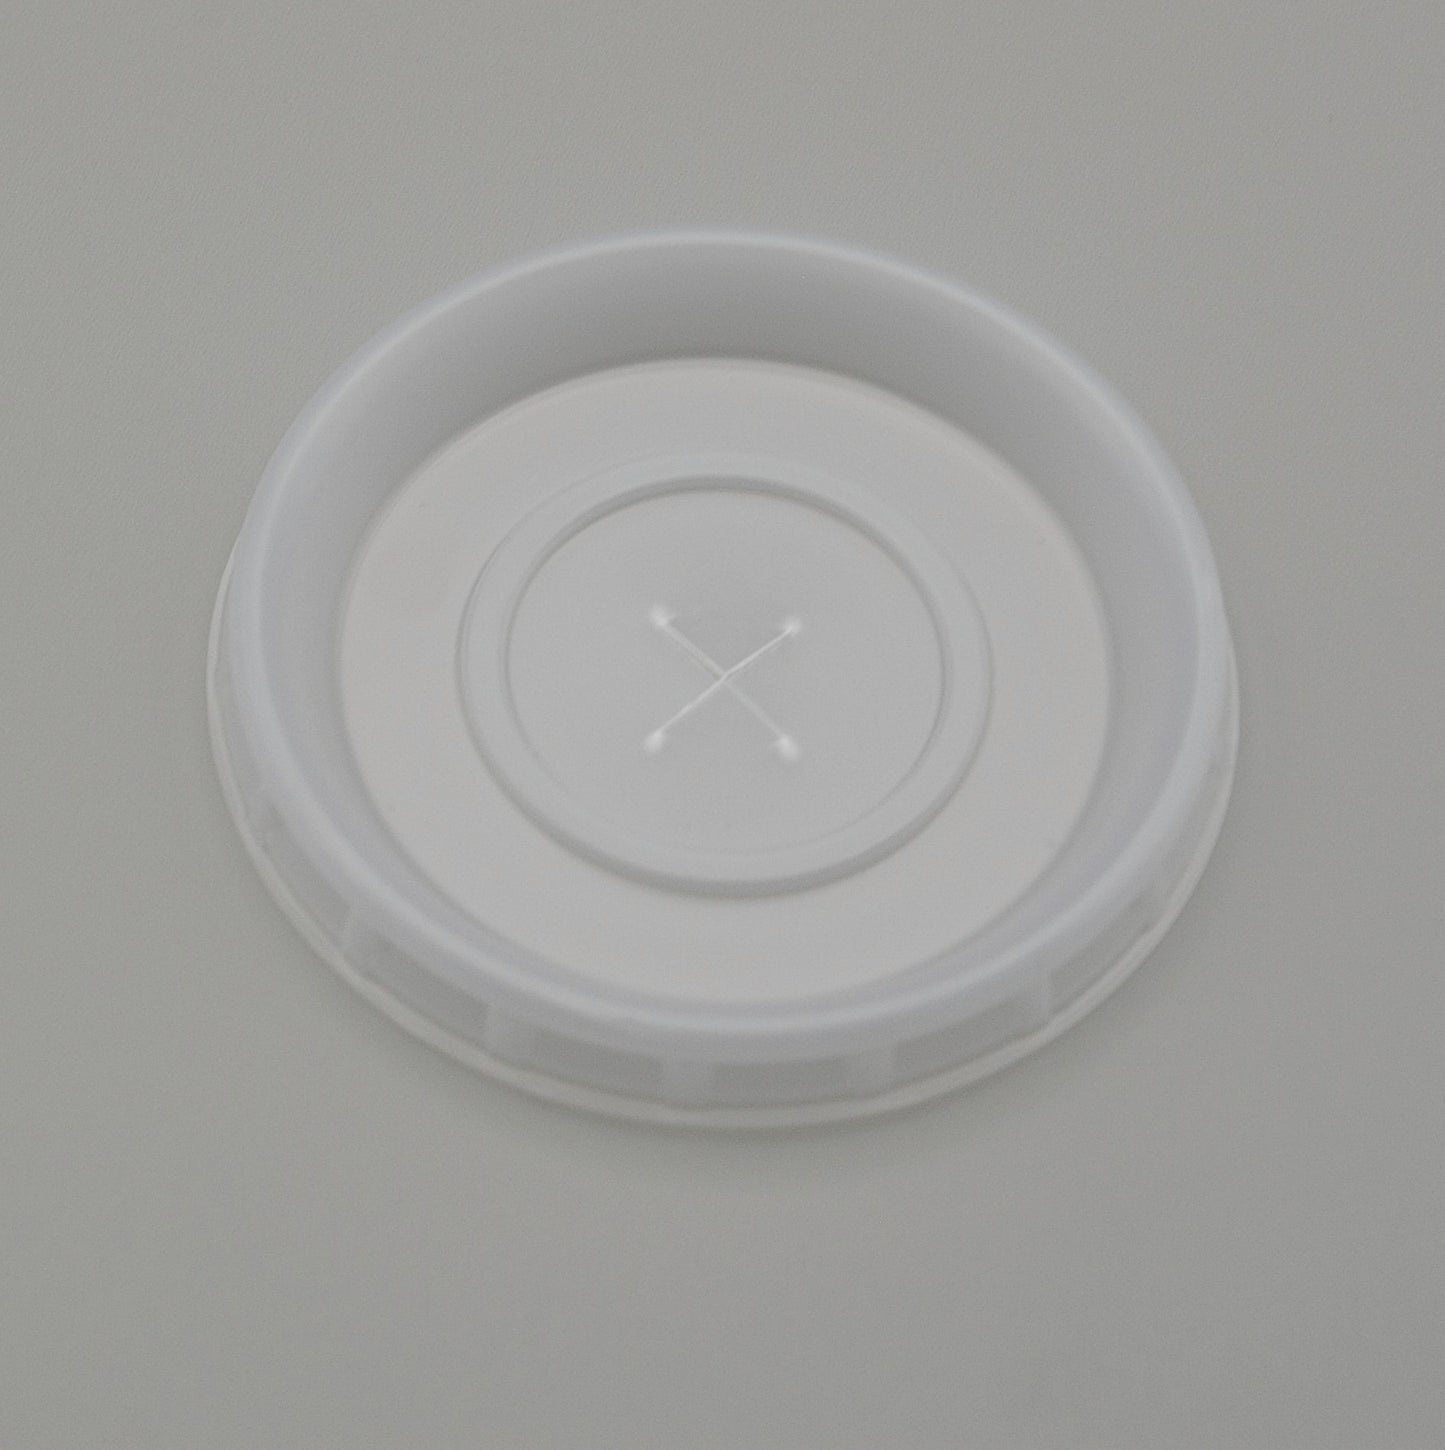 LDSO-LT - Low Heat Disposable Plastic Soup Bowl Lid